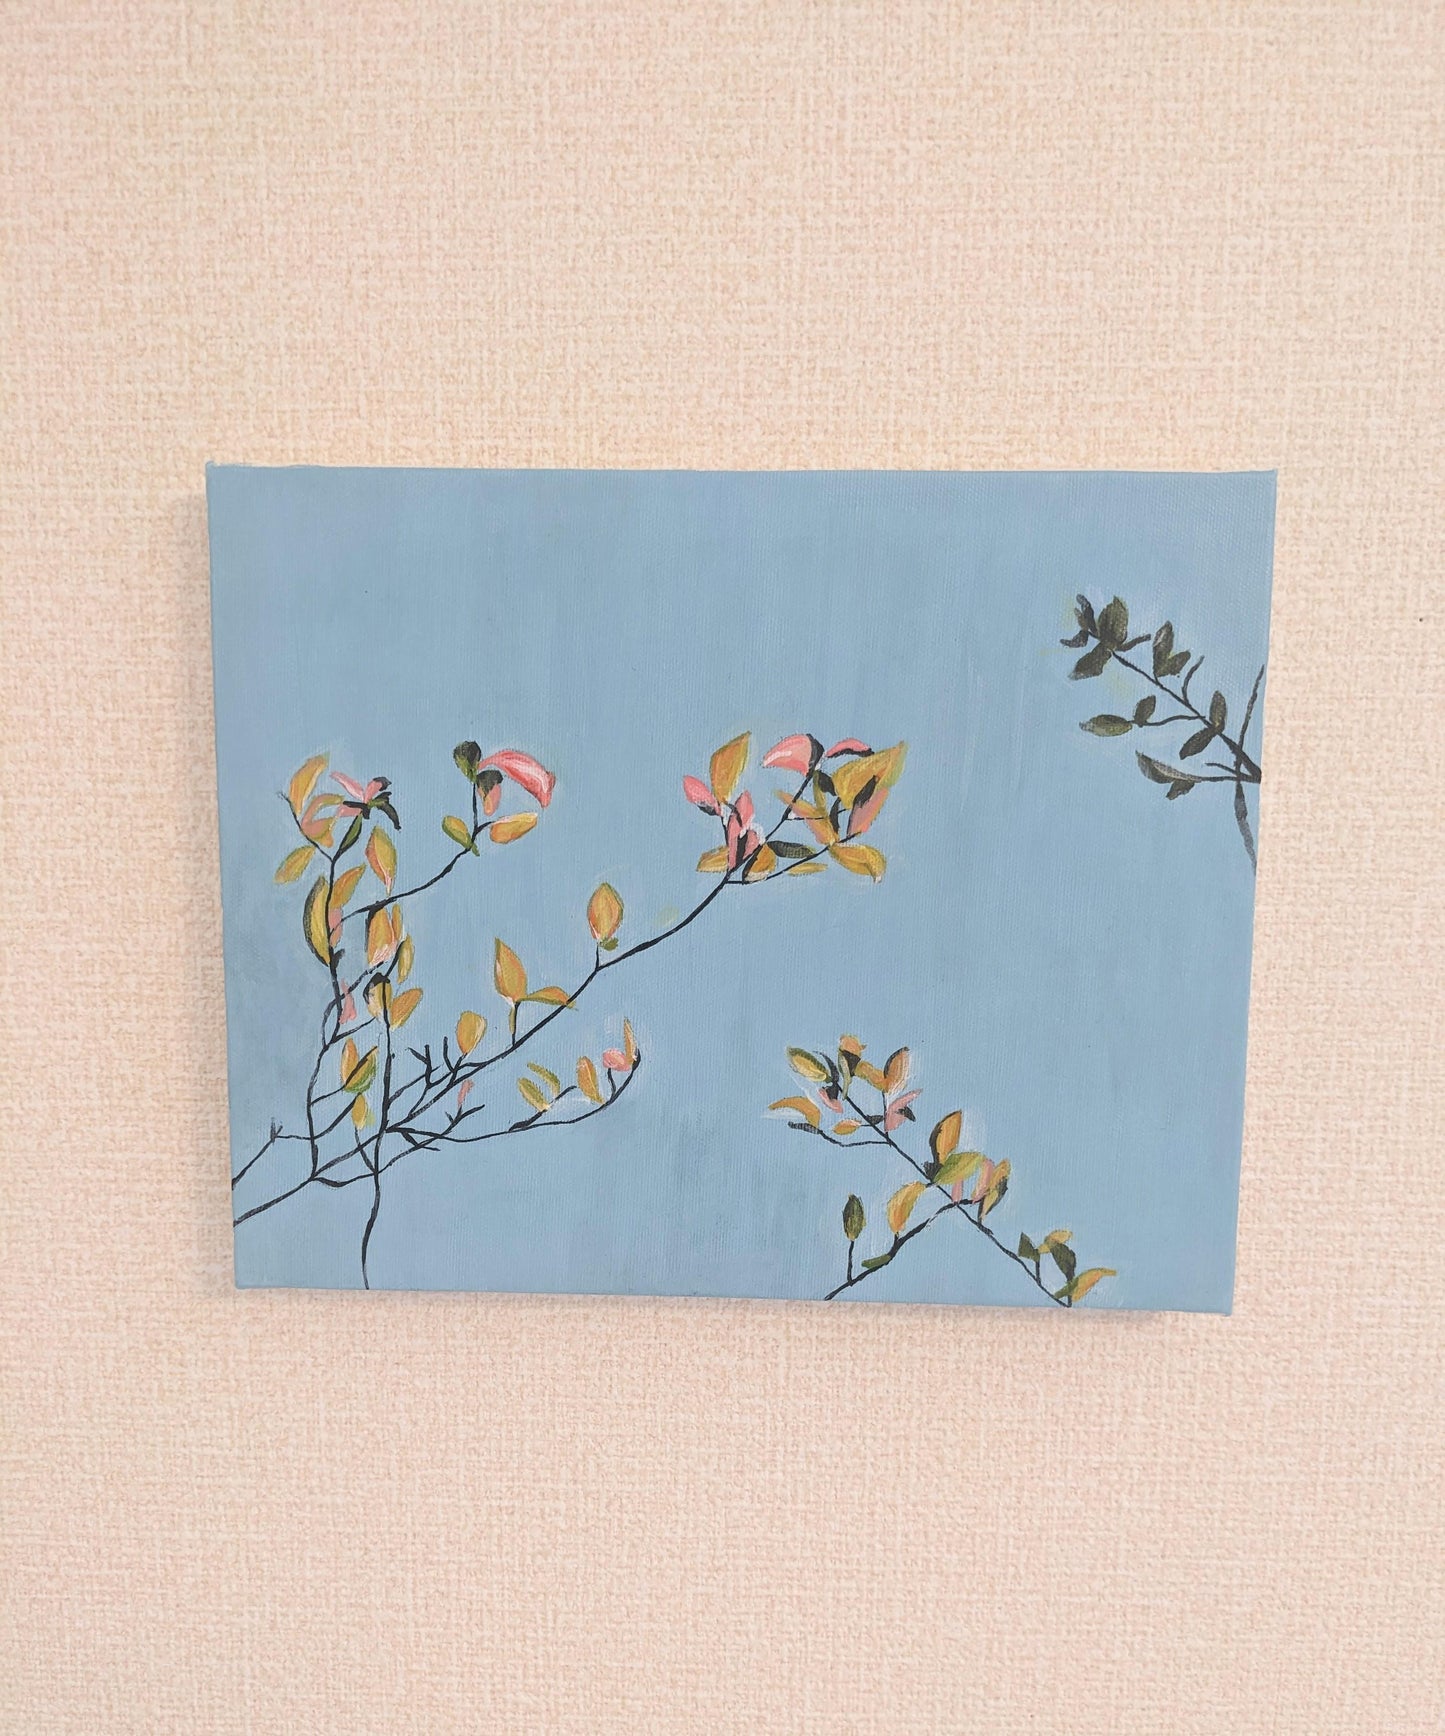 『花のような木（A tree like flowers）』 - FROM ARTIST